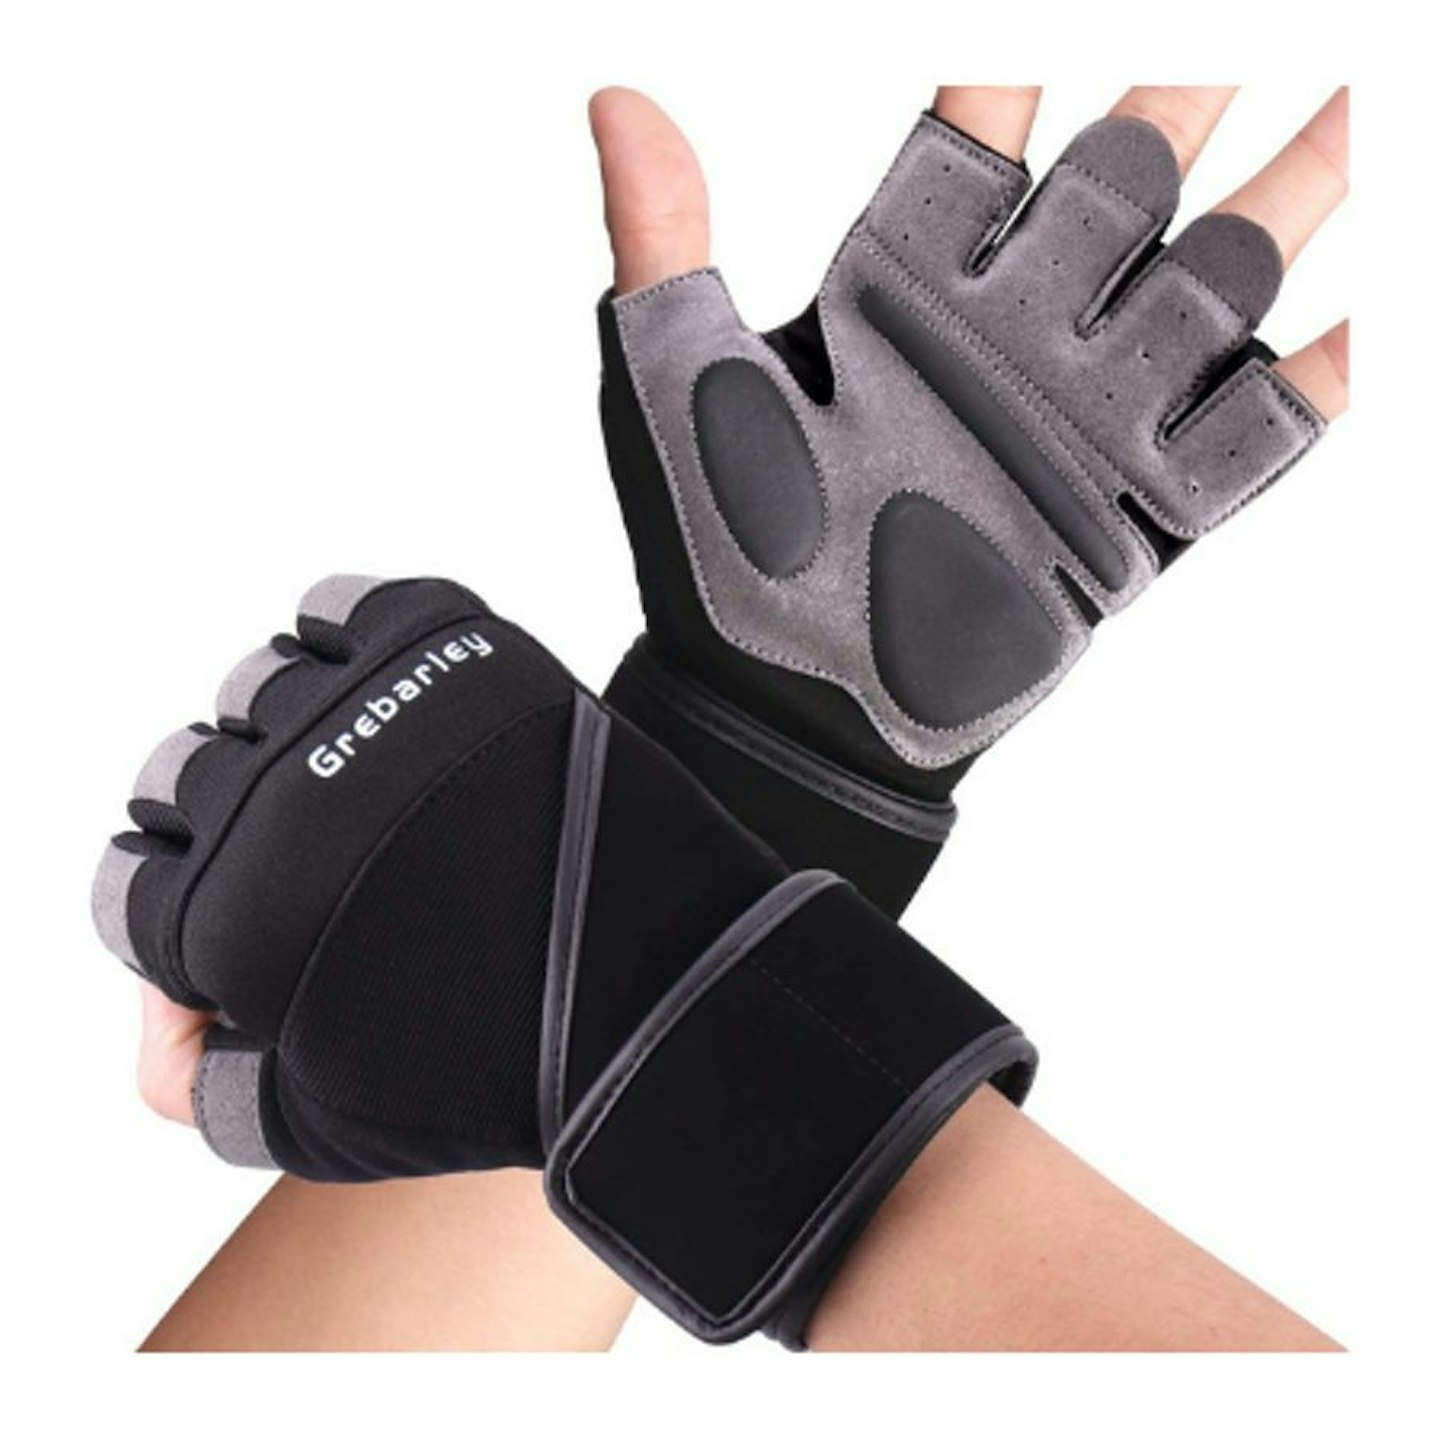 Grebarley Gym Gloves